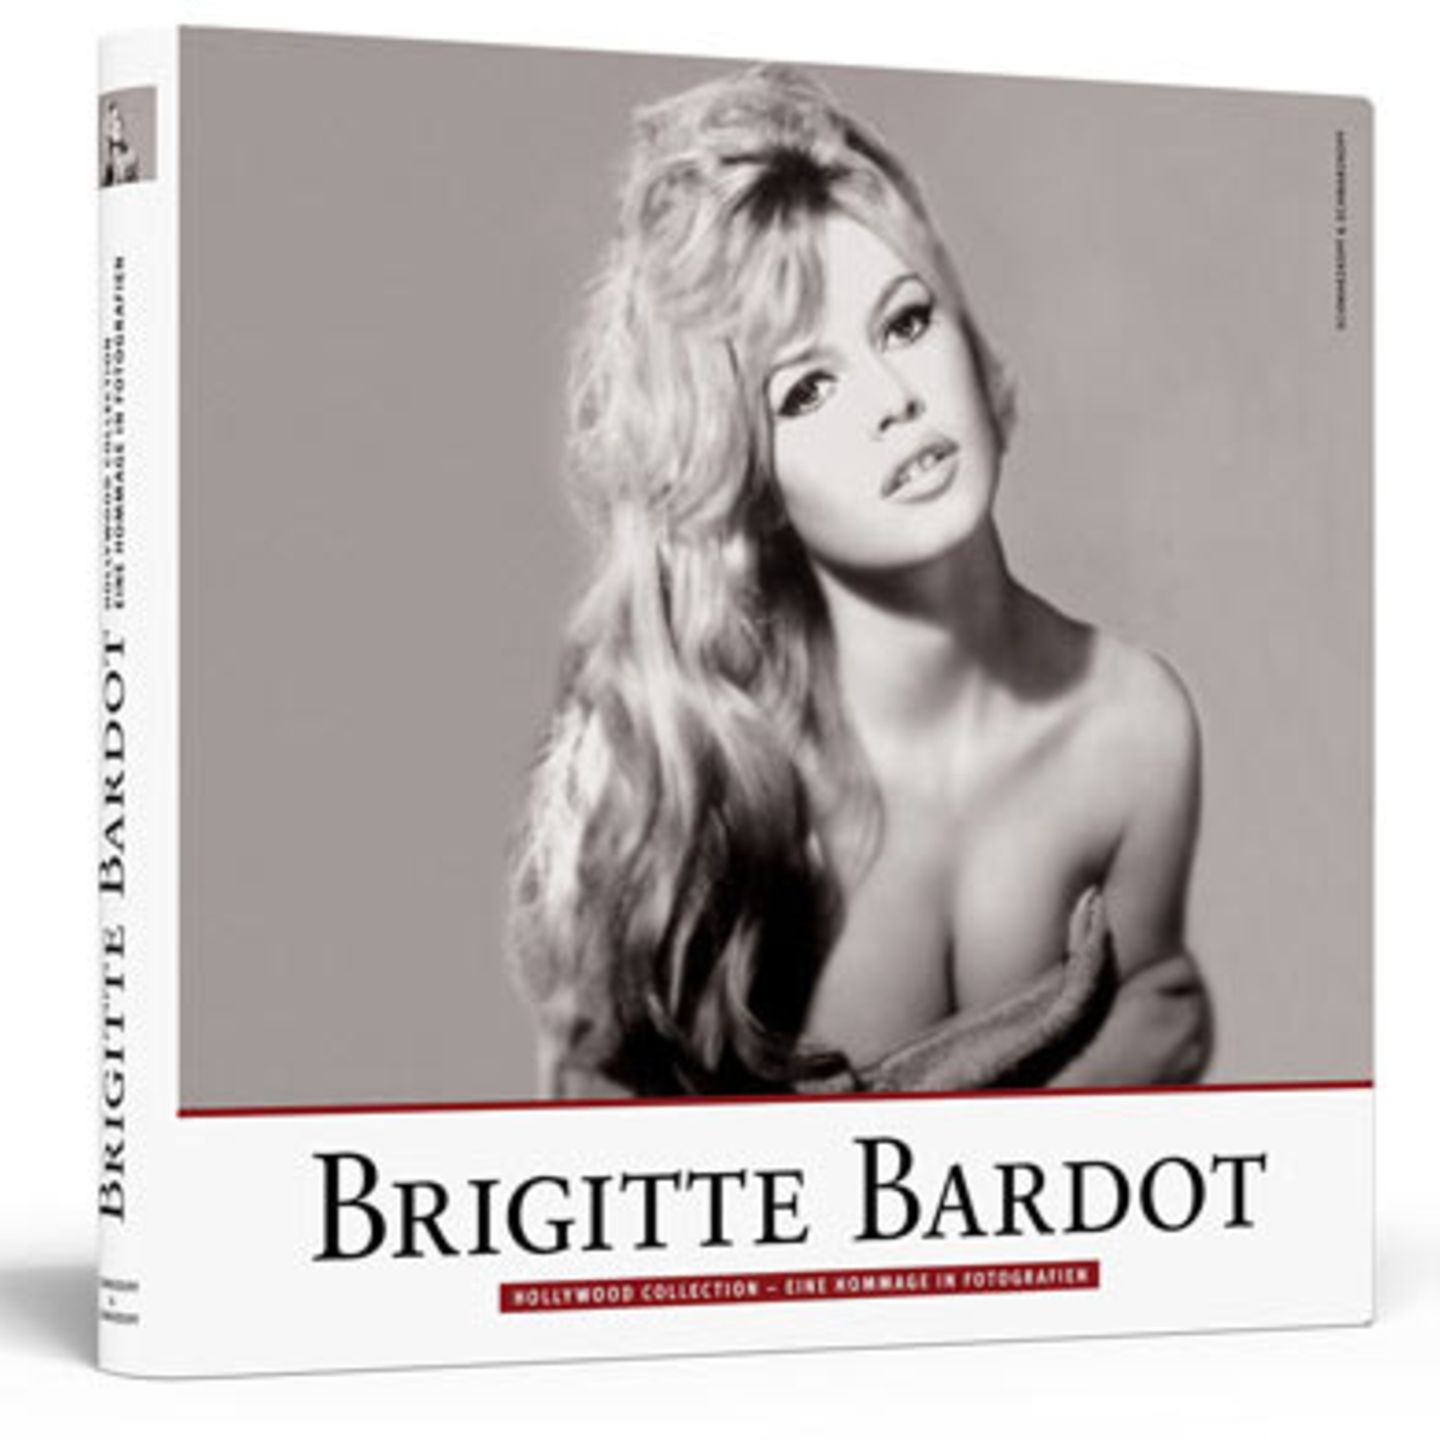 Der Bildband "BRIGITTE BARDOT" erscheint zum 75. Geburtstag der Diva am 28. September 2009 in der Reihe "Hollywood Collection - Eine Hommage in Fotografien" im Berliner Verlag Schwarzkopf & Schwarzkopf zum Preis von 29,90 Euro.